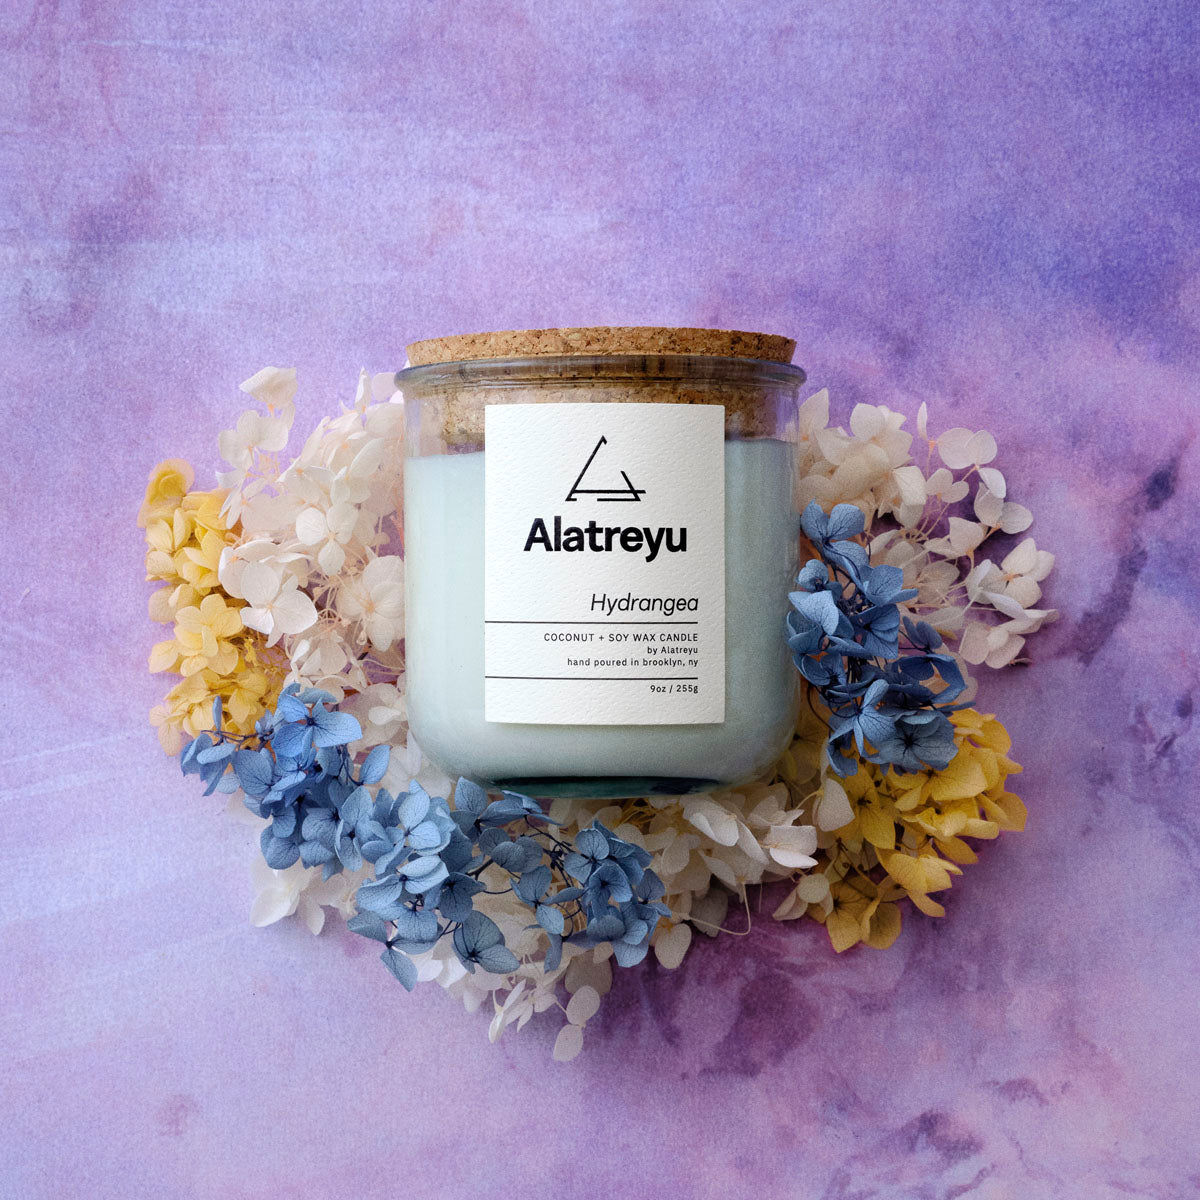 9oz Coconut and Soy Hydrangea Flower Candle by Alatreyu